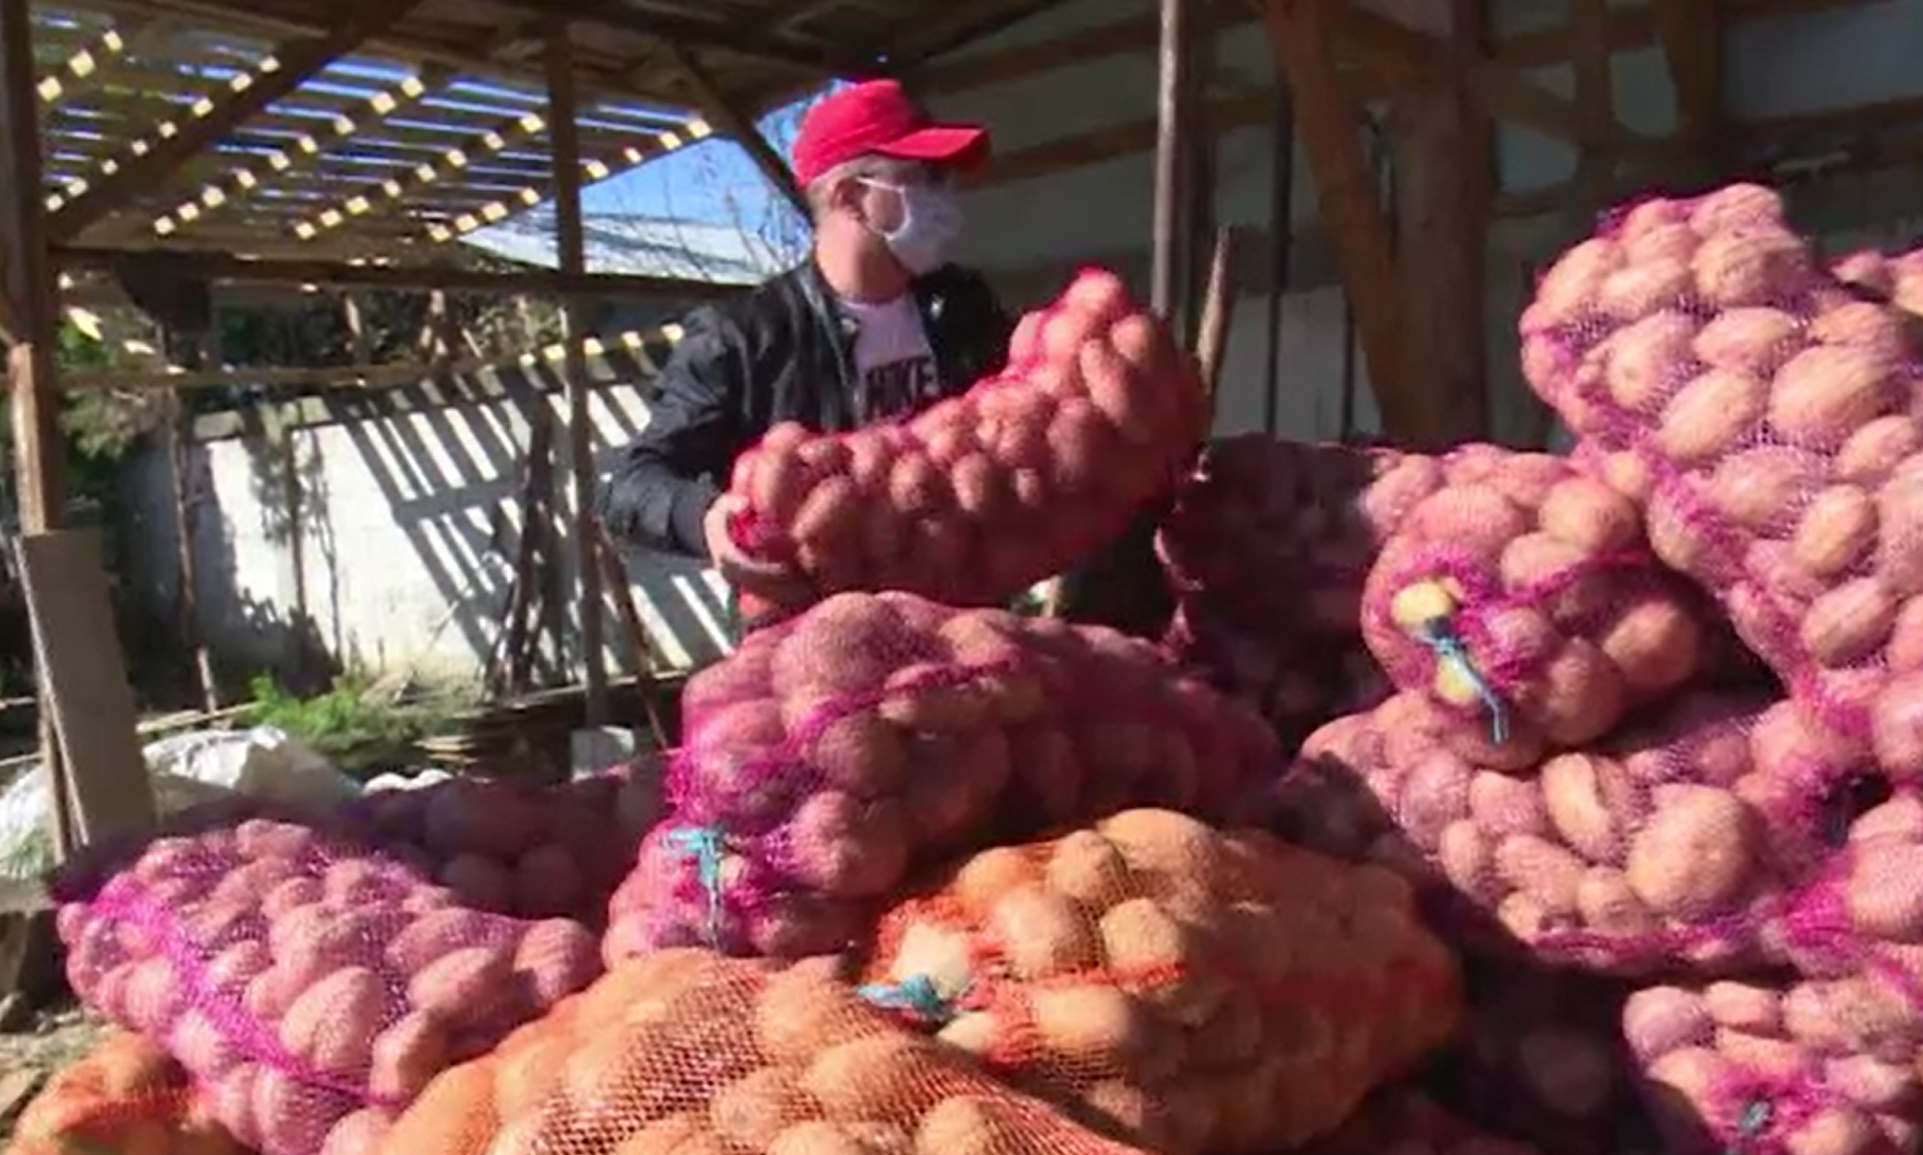 Gest impresionant al unor fermieri din Dâmbovița, care și-au donat o parte din recoltă